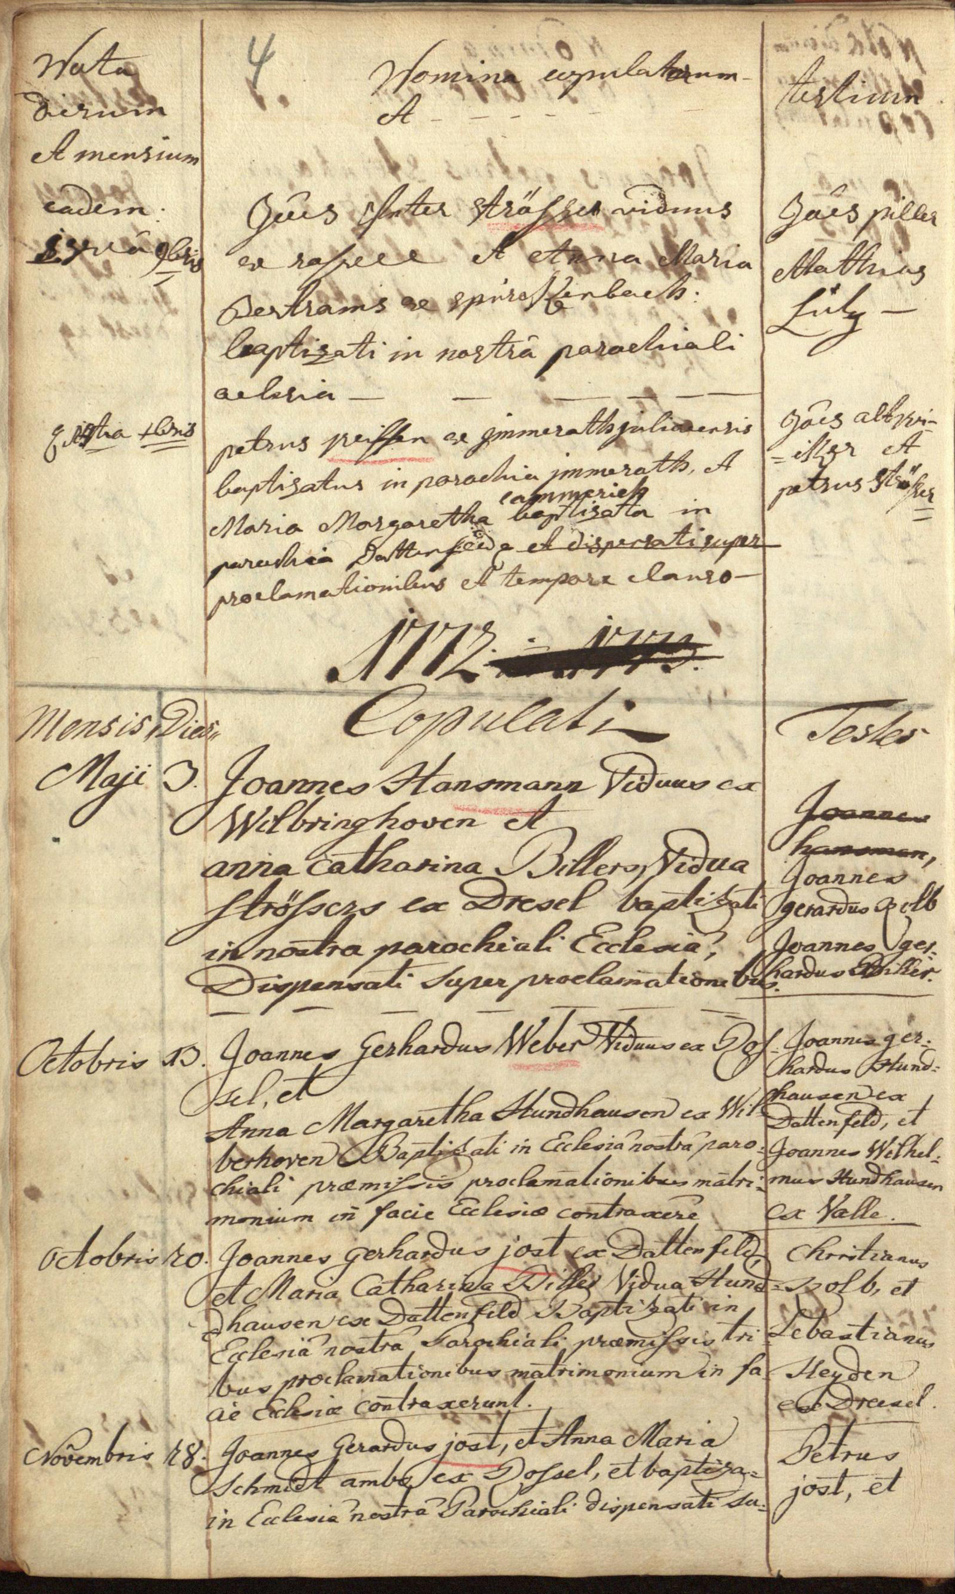 Heirat-PeterWeiffen-Kammerich-1772